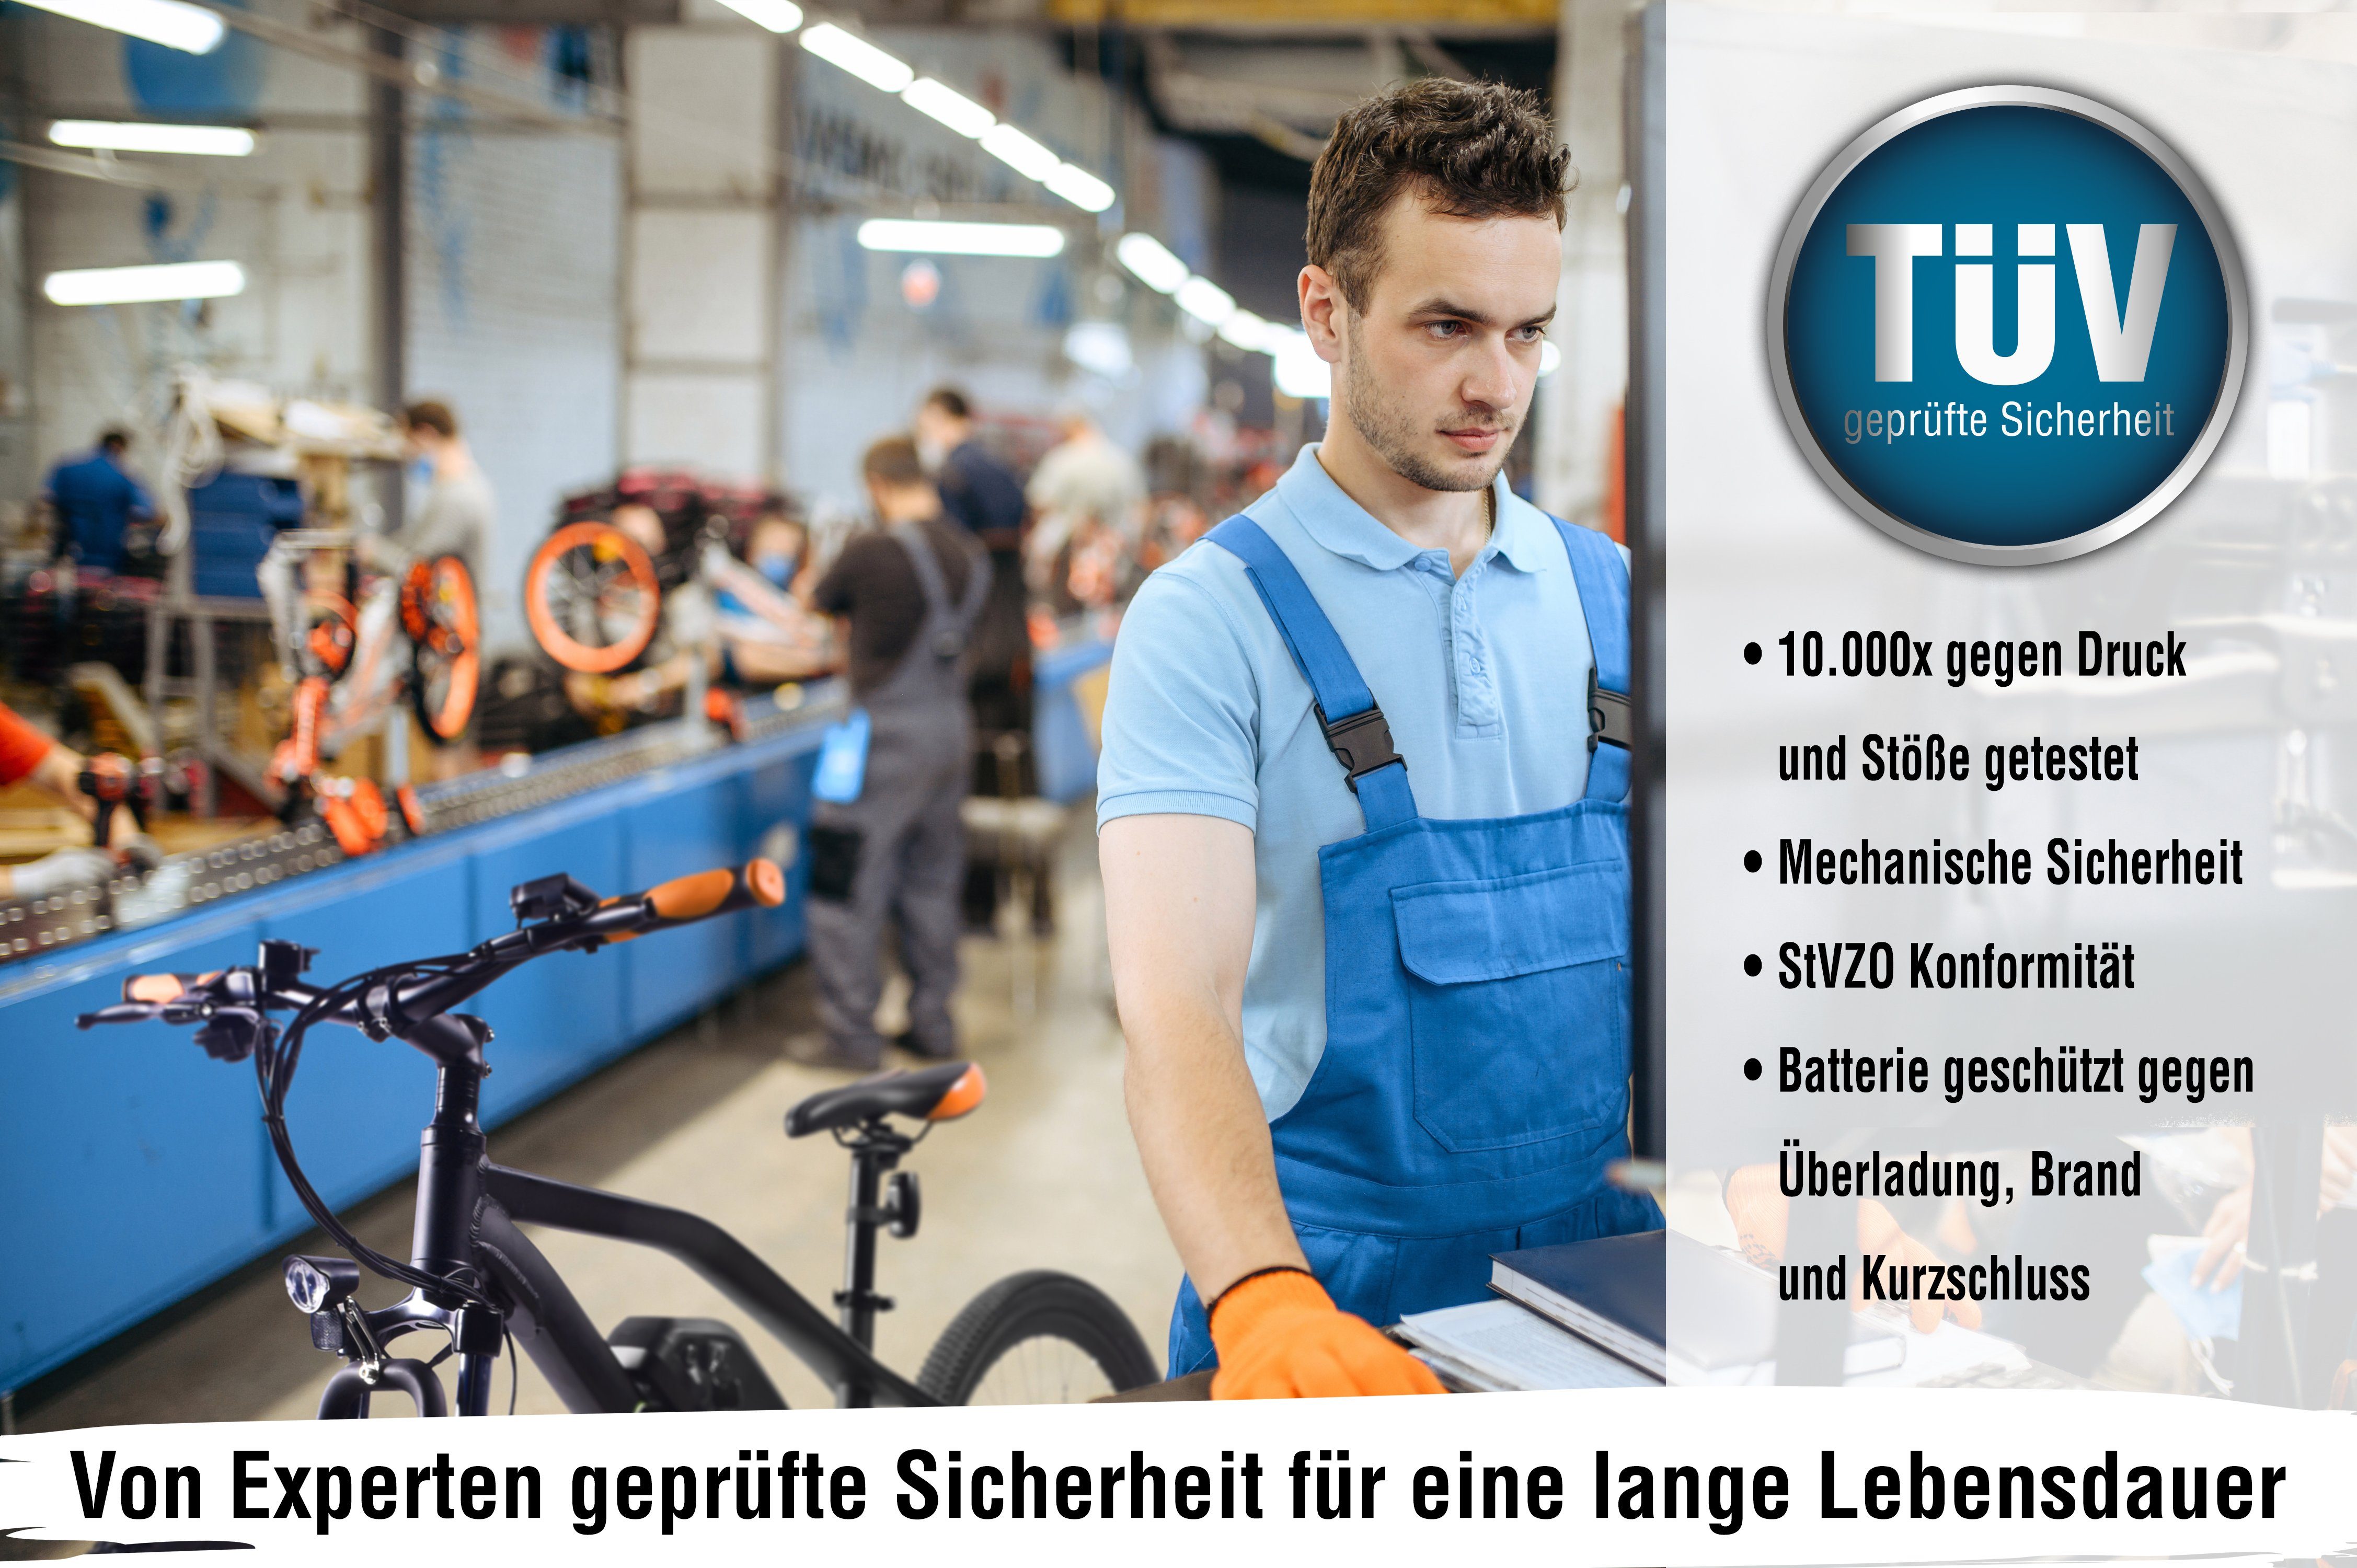 29 E-Bike Neo Product Kettenschaltung, SachsenRAD German Design Design“ 7 Gang, Award R6 Zoll, 2022 „Excellent